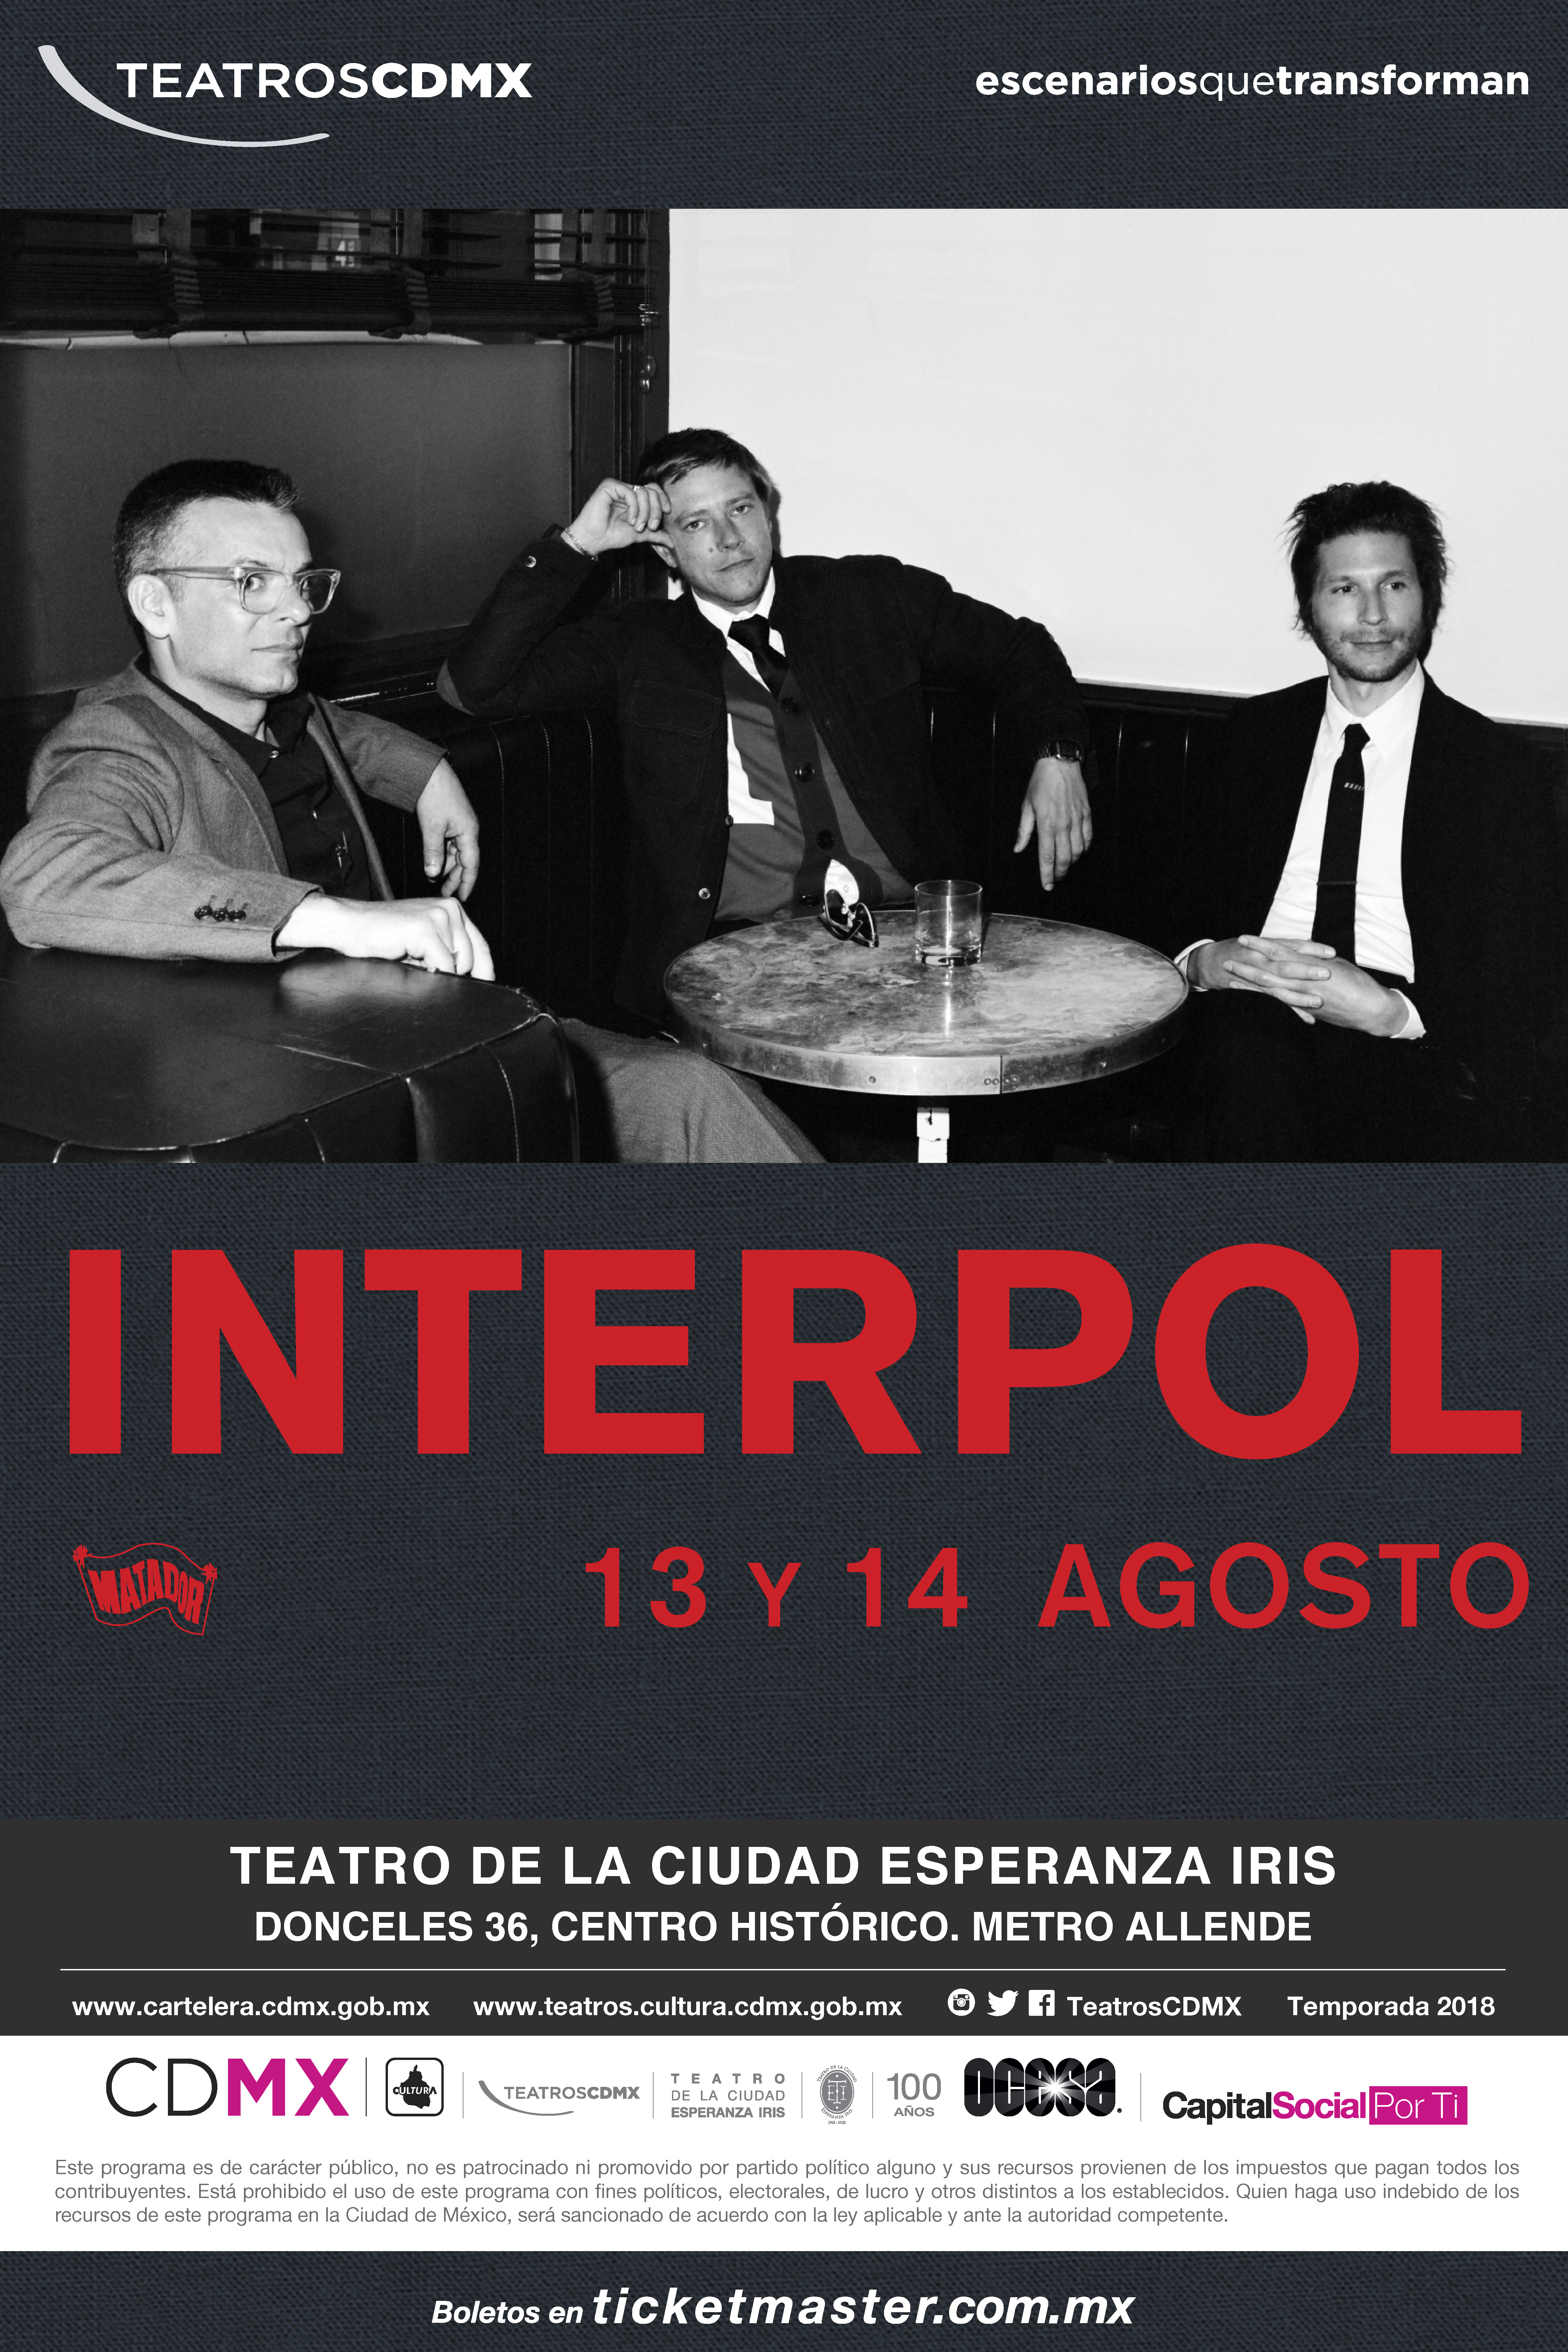 EXCLUSIVA: ¡Interpol regresa a México para dar DOS conciertos!